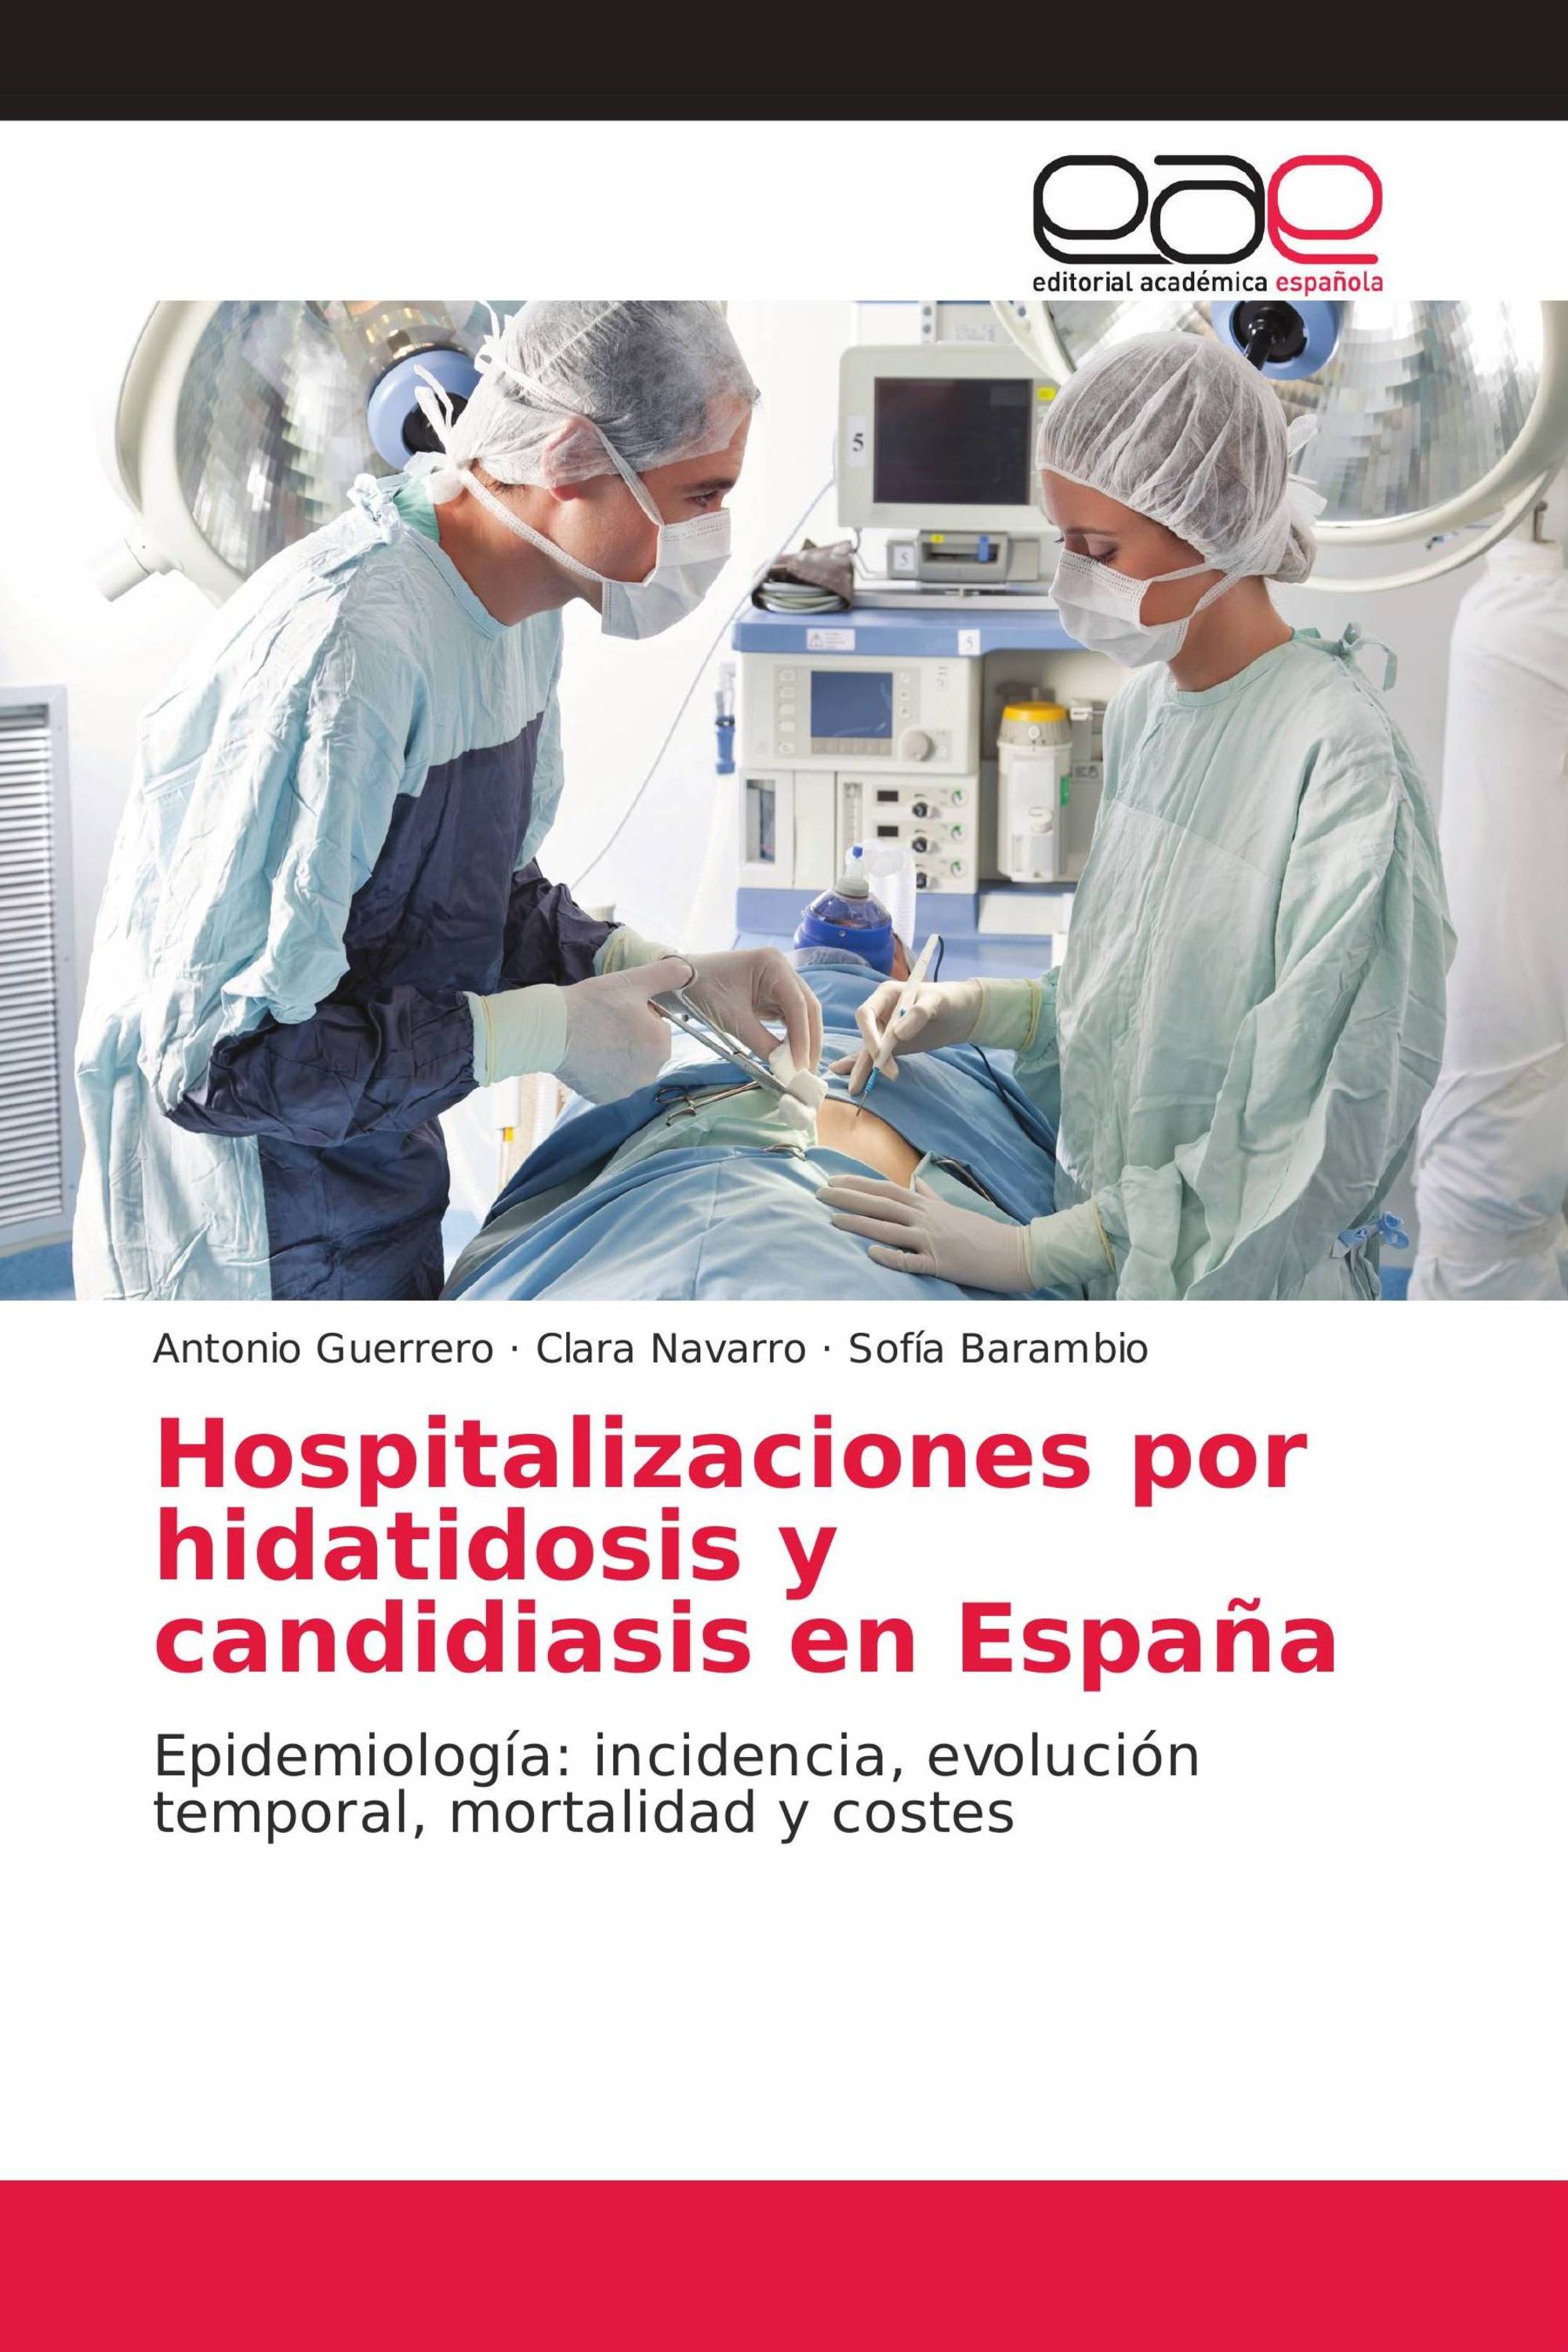 Hospitalizaciones por hidatidosis y candidiasis en España